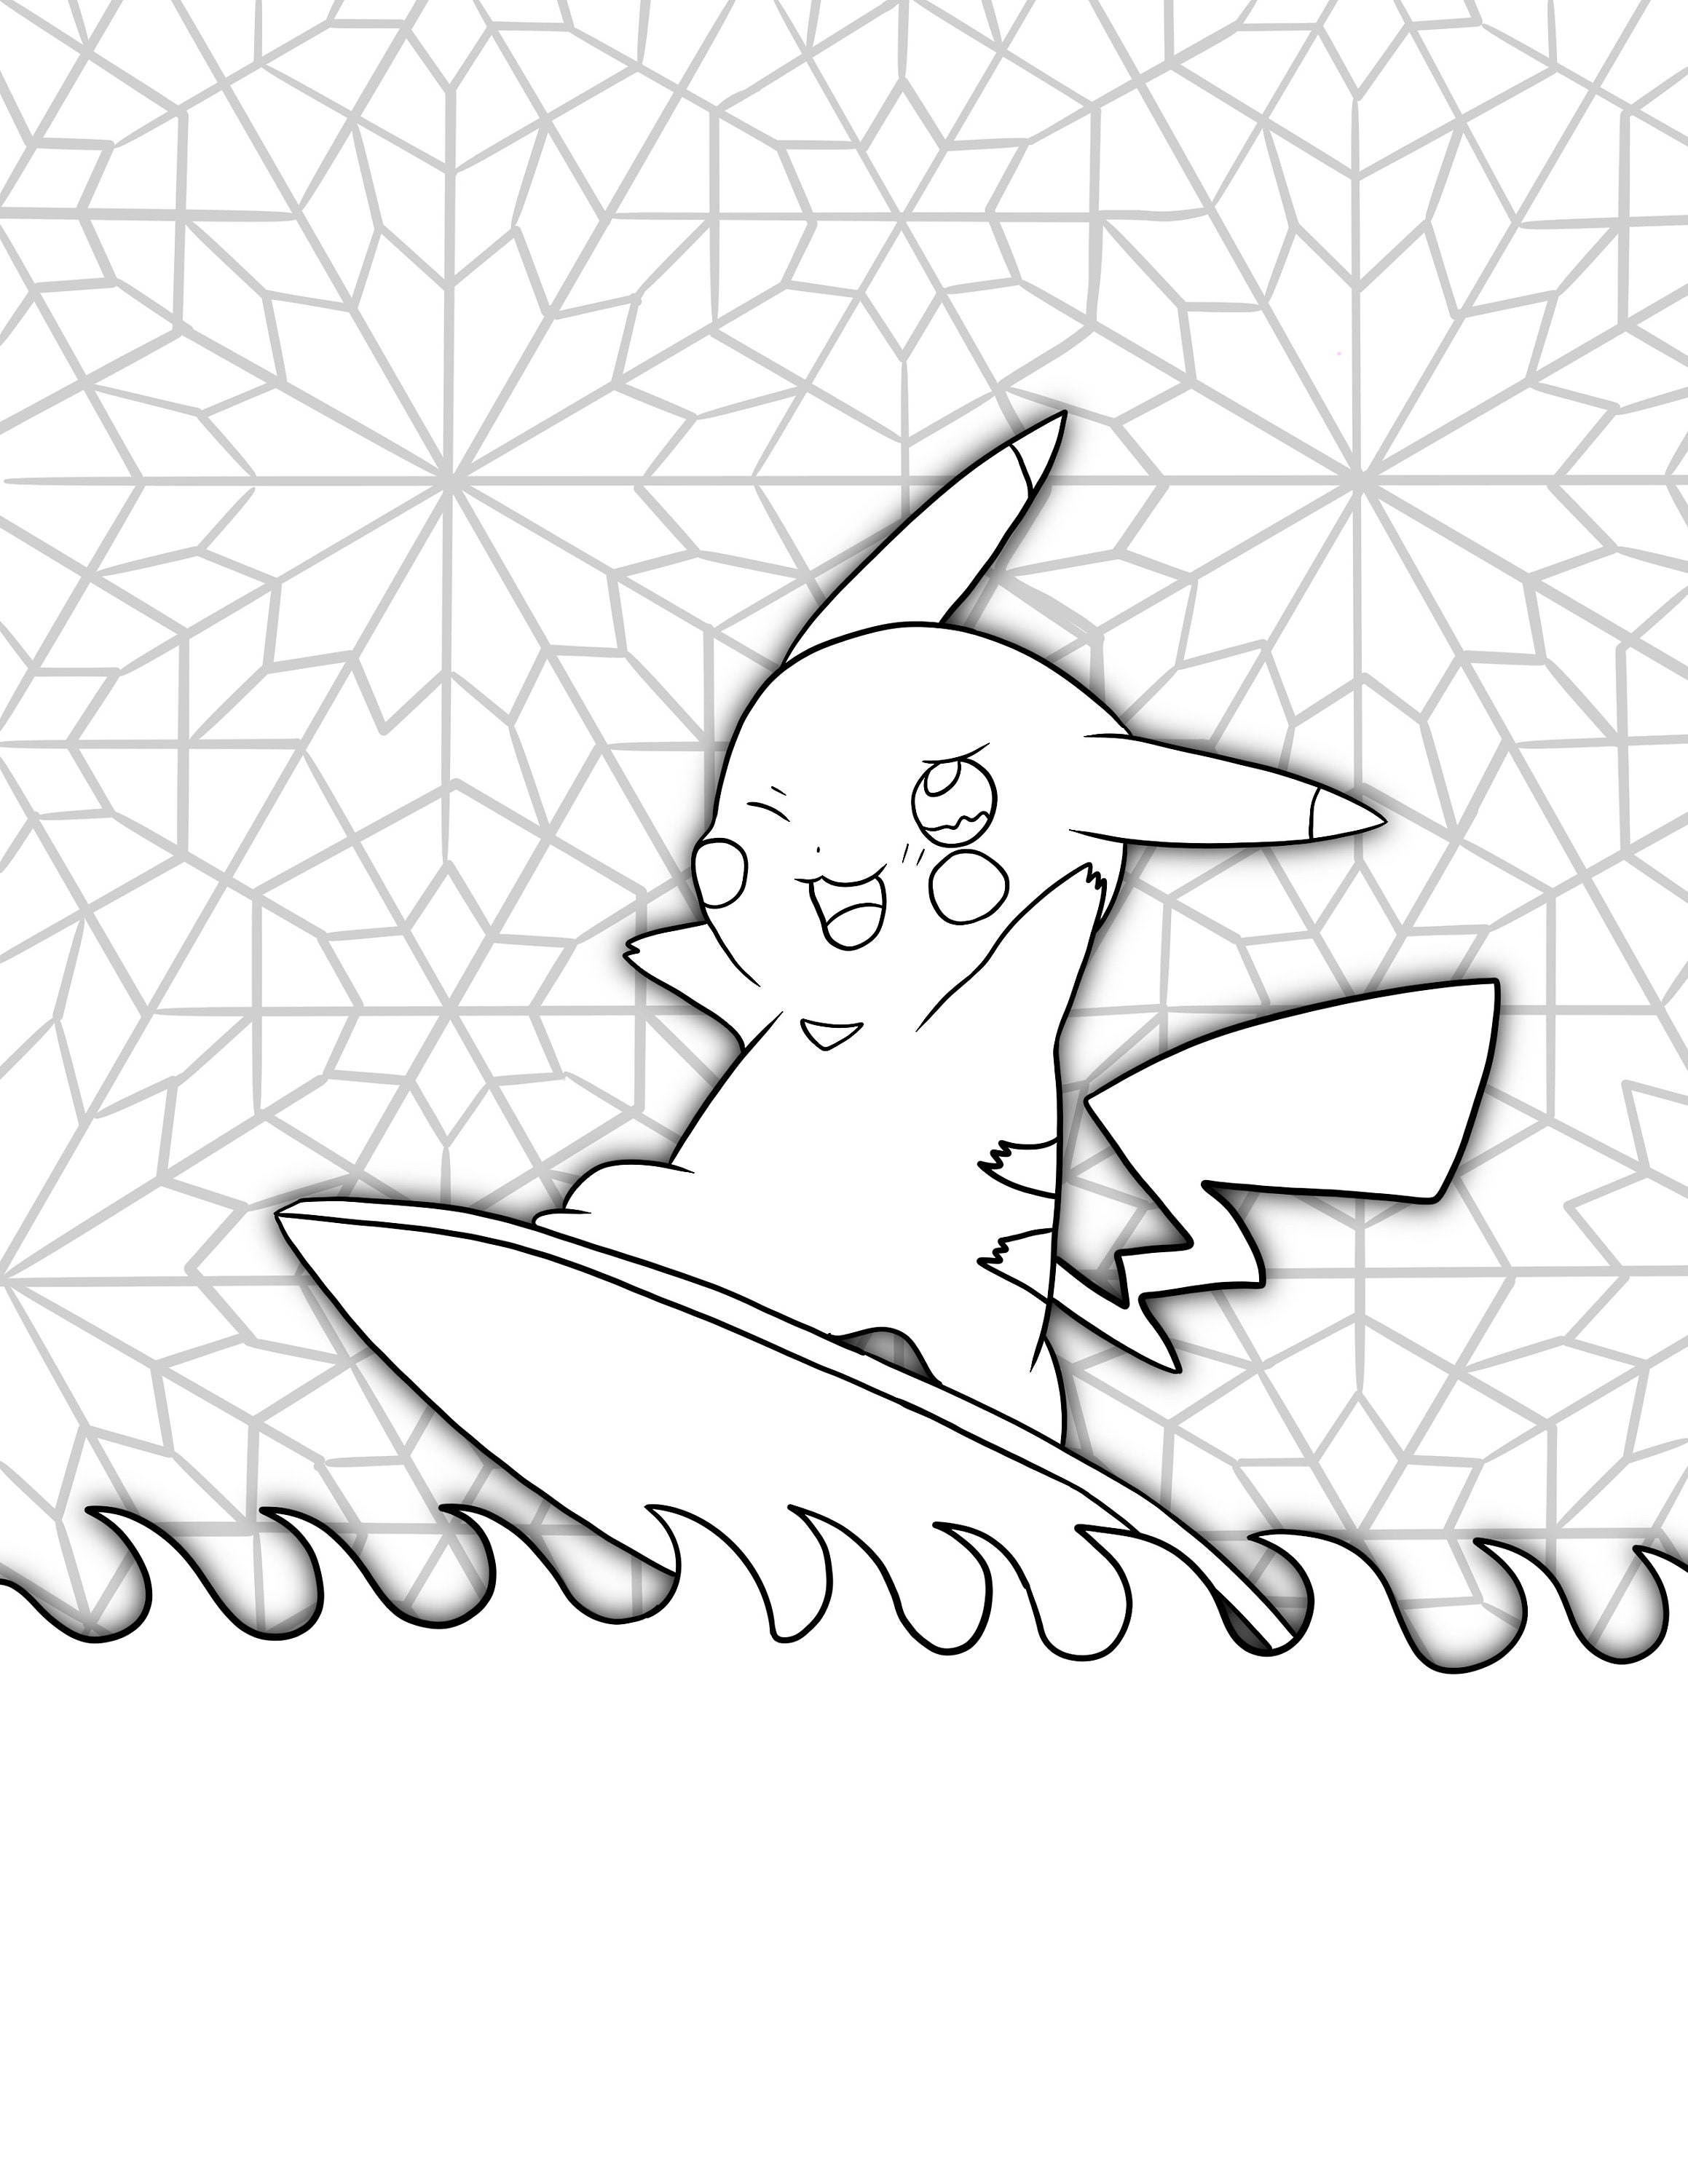 Pikachu pokemon coloring sheets